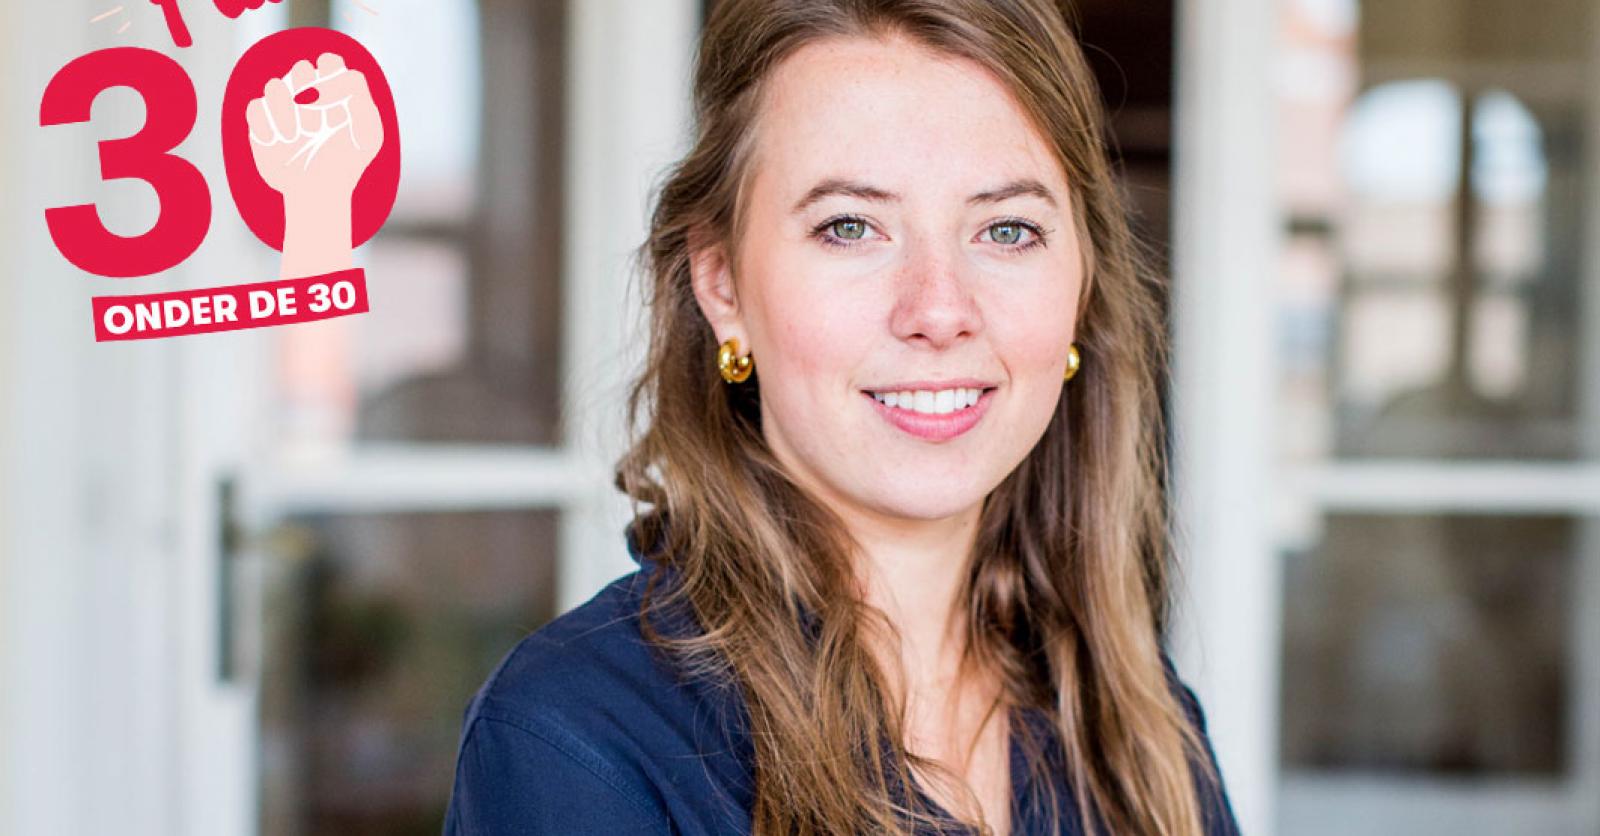 Ondernemer Aline Muylaert (26) pleit voor meer vrouwen aan de top